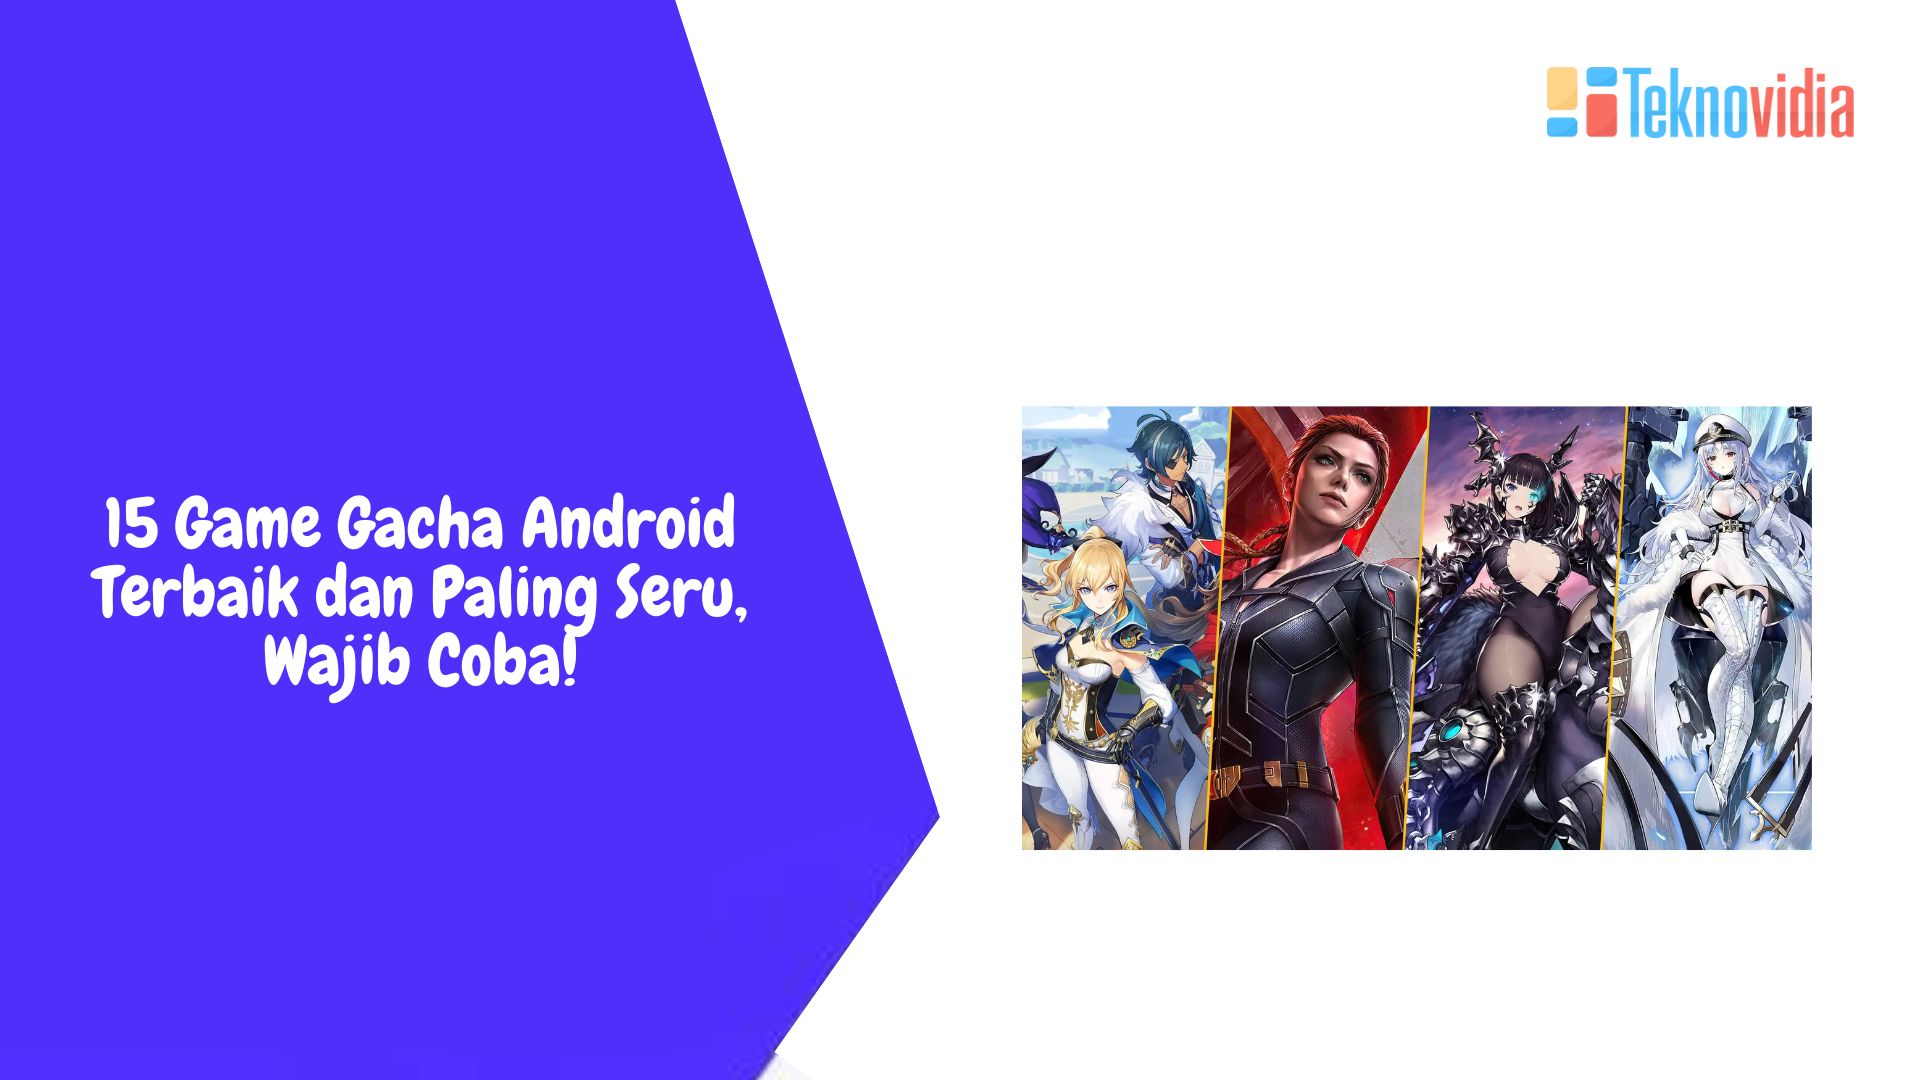 15 Game Gacha Android Terbaik dan Paling Seru, Wajib Coba!